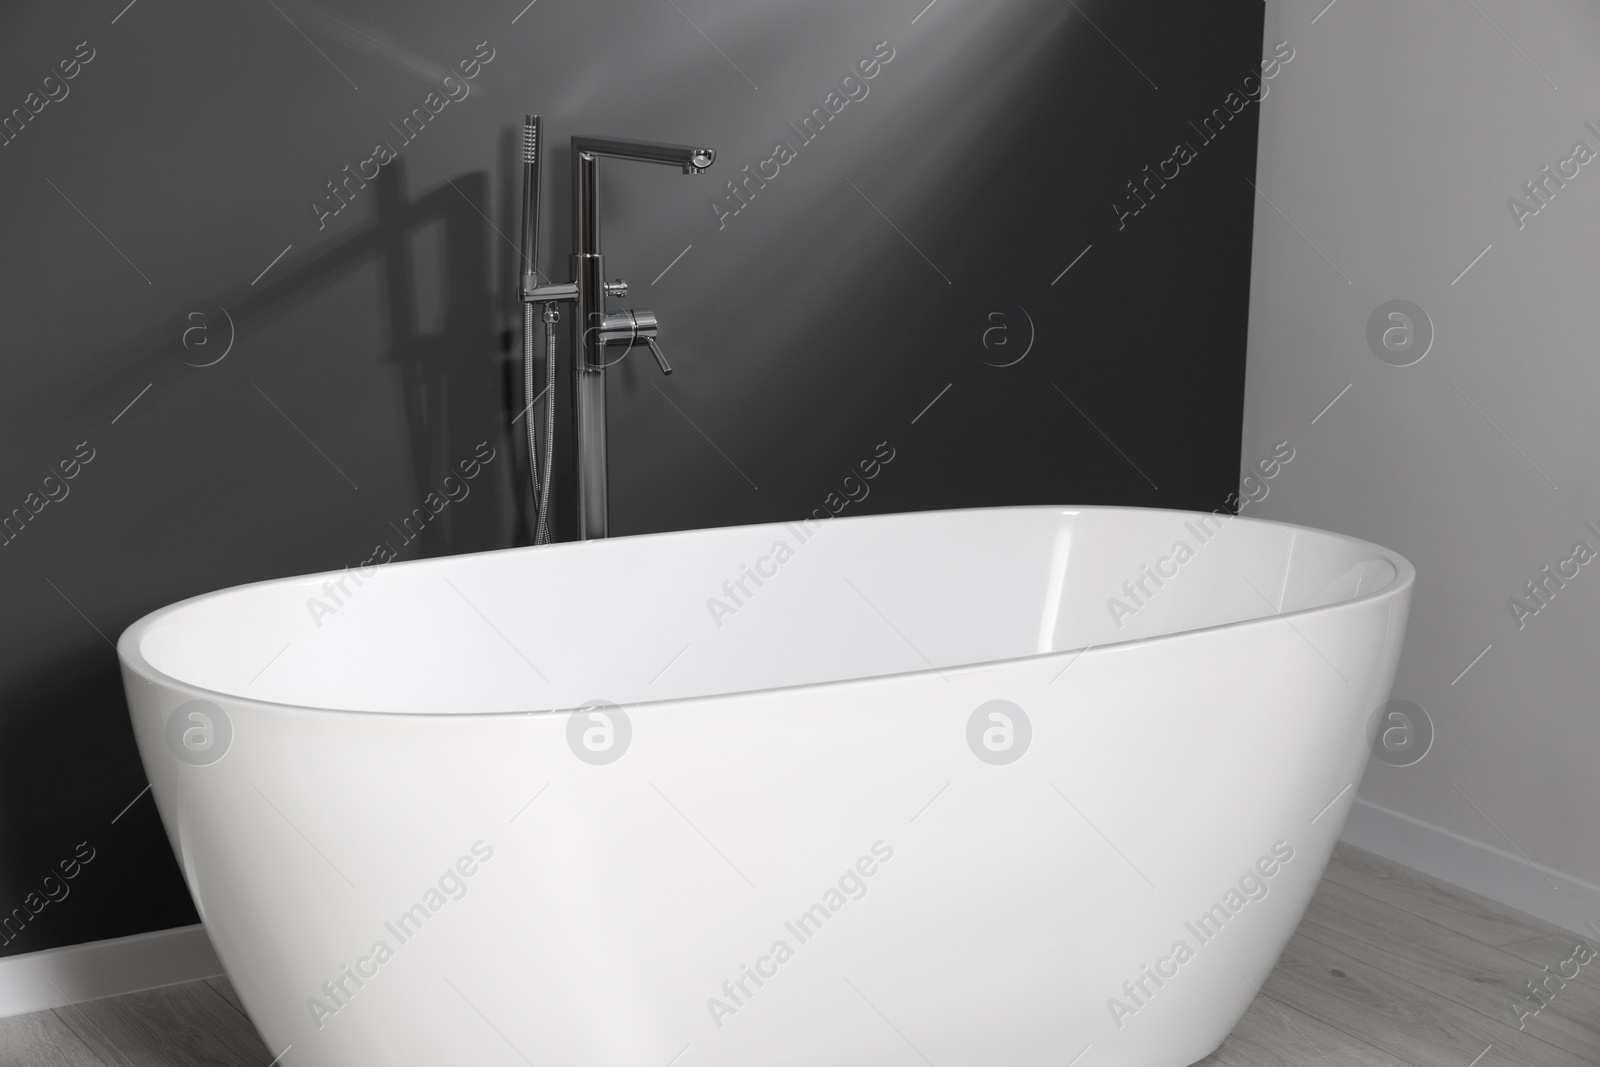 Photo of Stylish ceramic tub near grey wall in bathroom